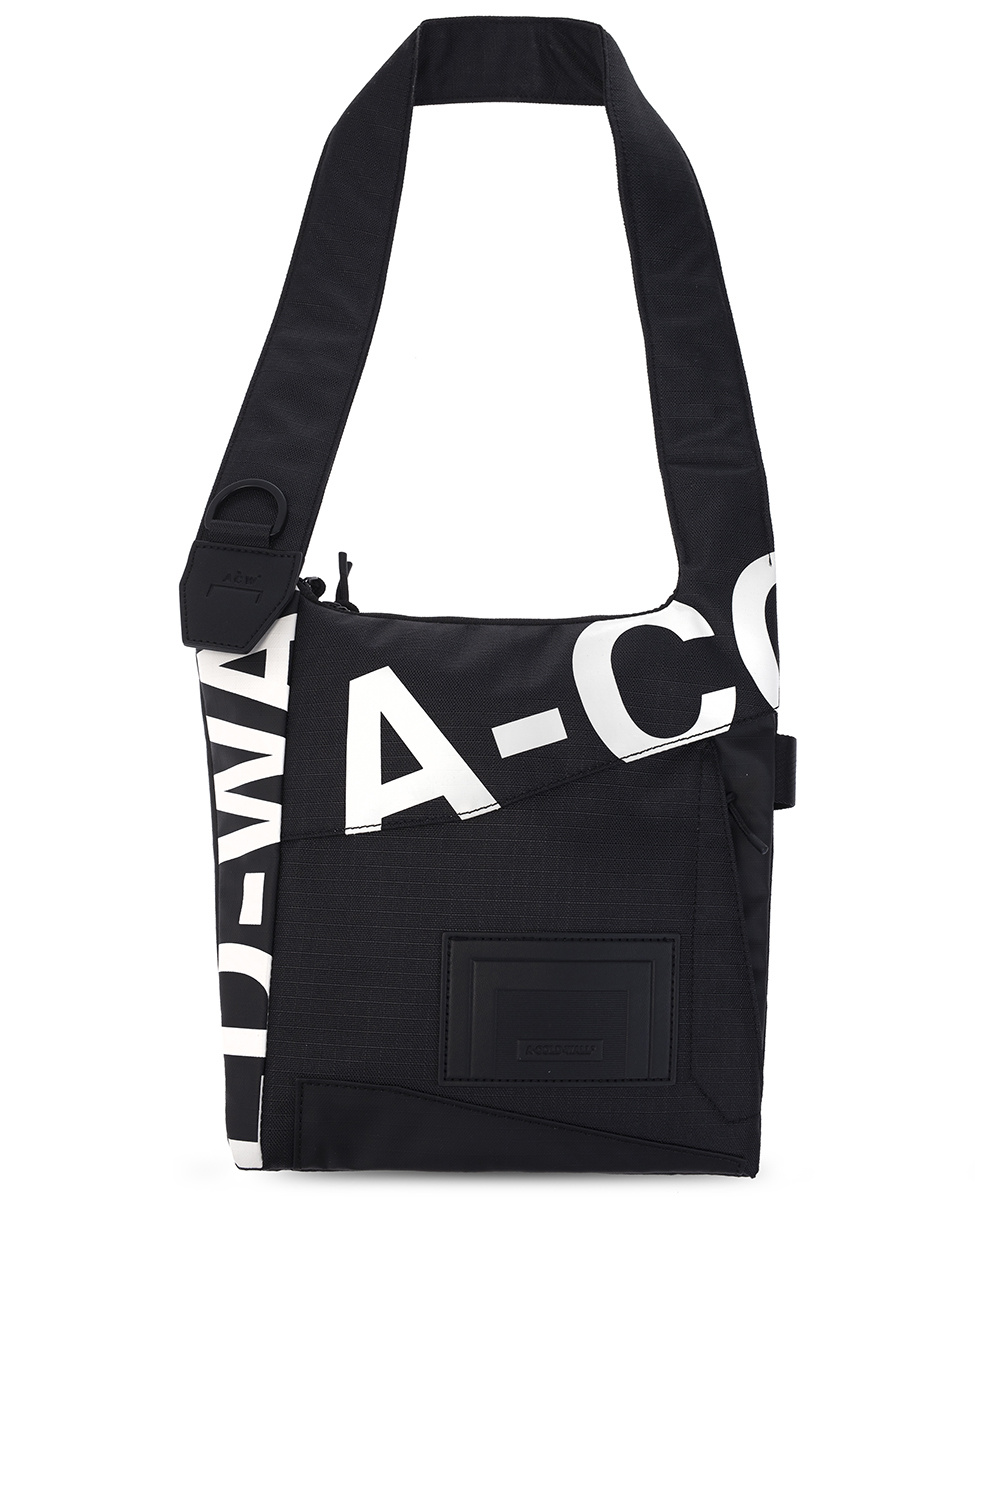 A-COLD-WALL* Shoulder Bag 6631441AAF1